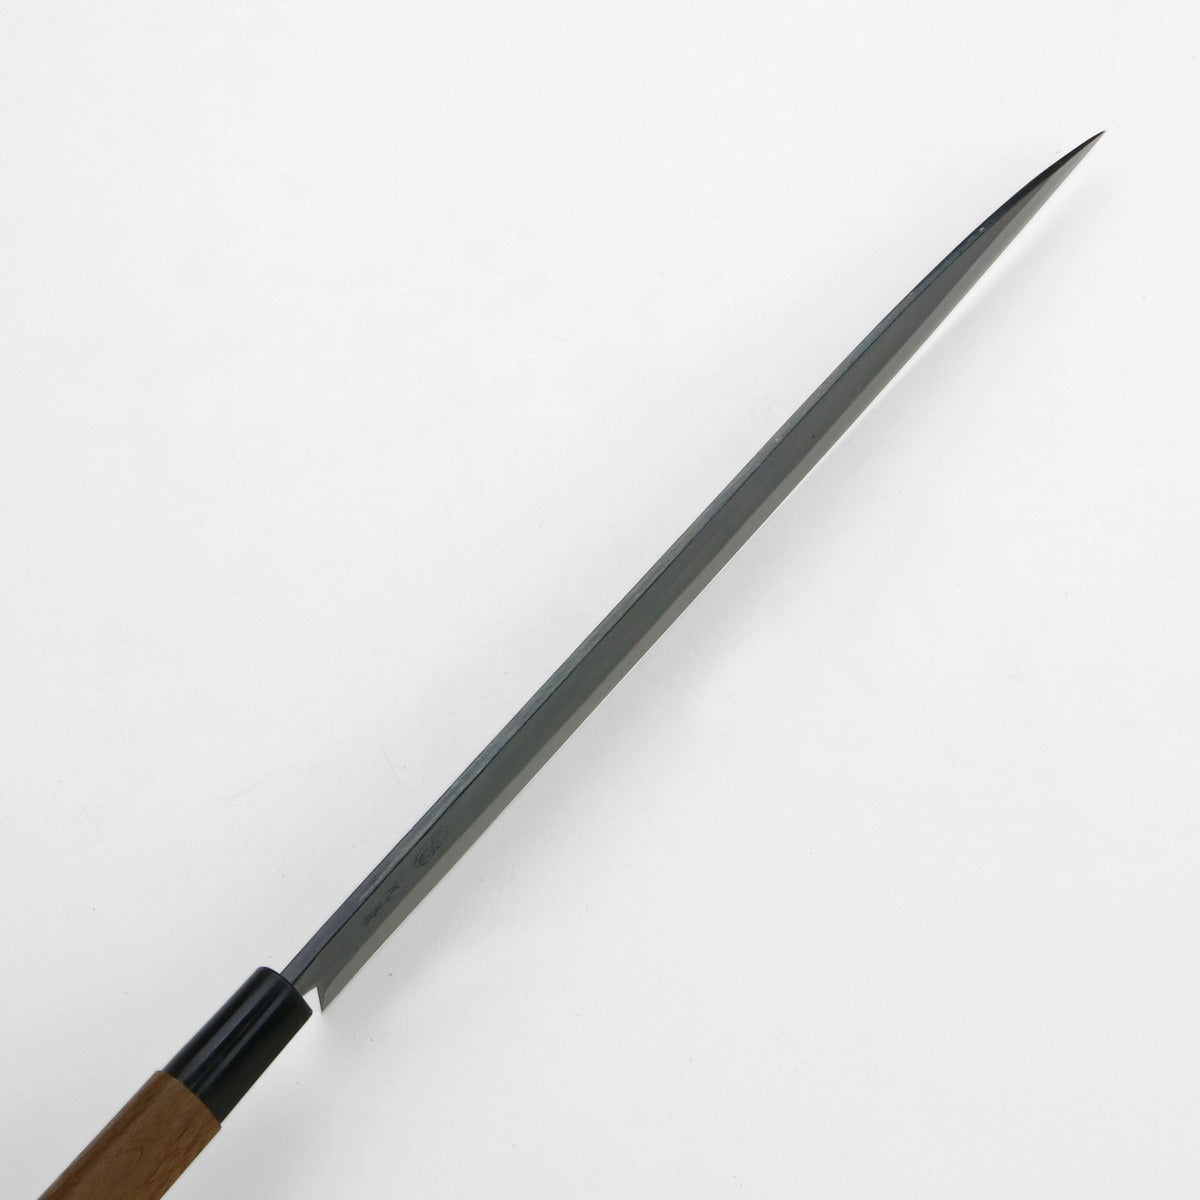 HONMAMON "MOTOKANE" Sashimi Kurouchi Knife, Aogami Steel No.1, 210mm~270mm